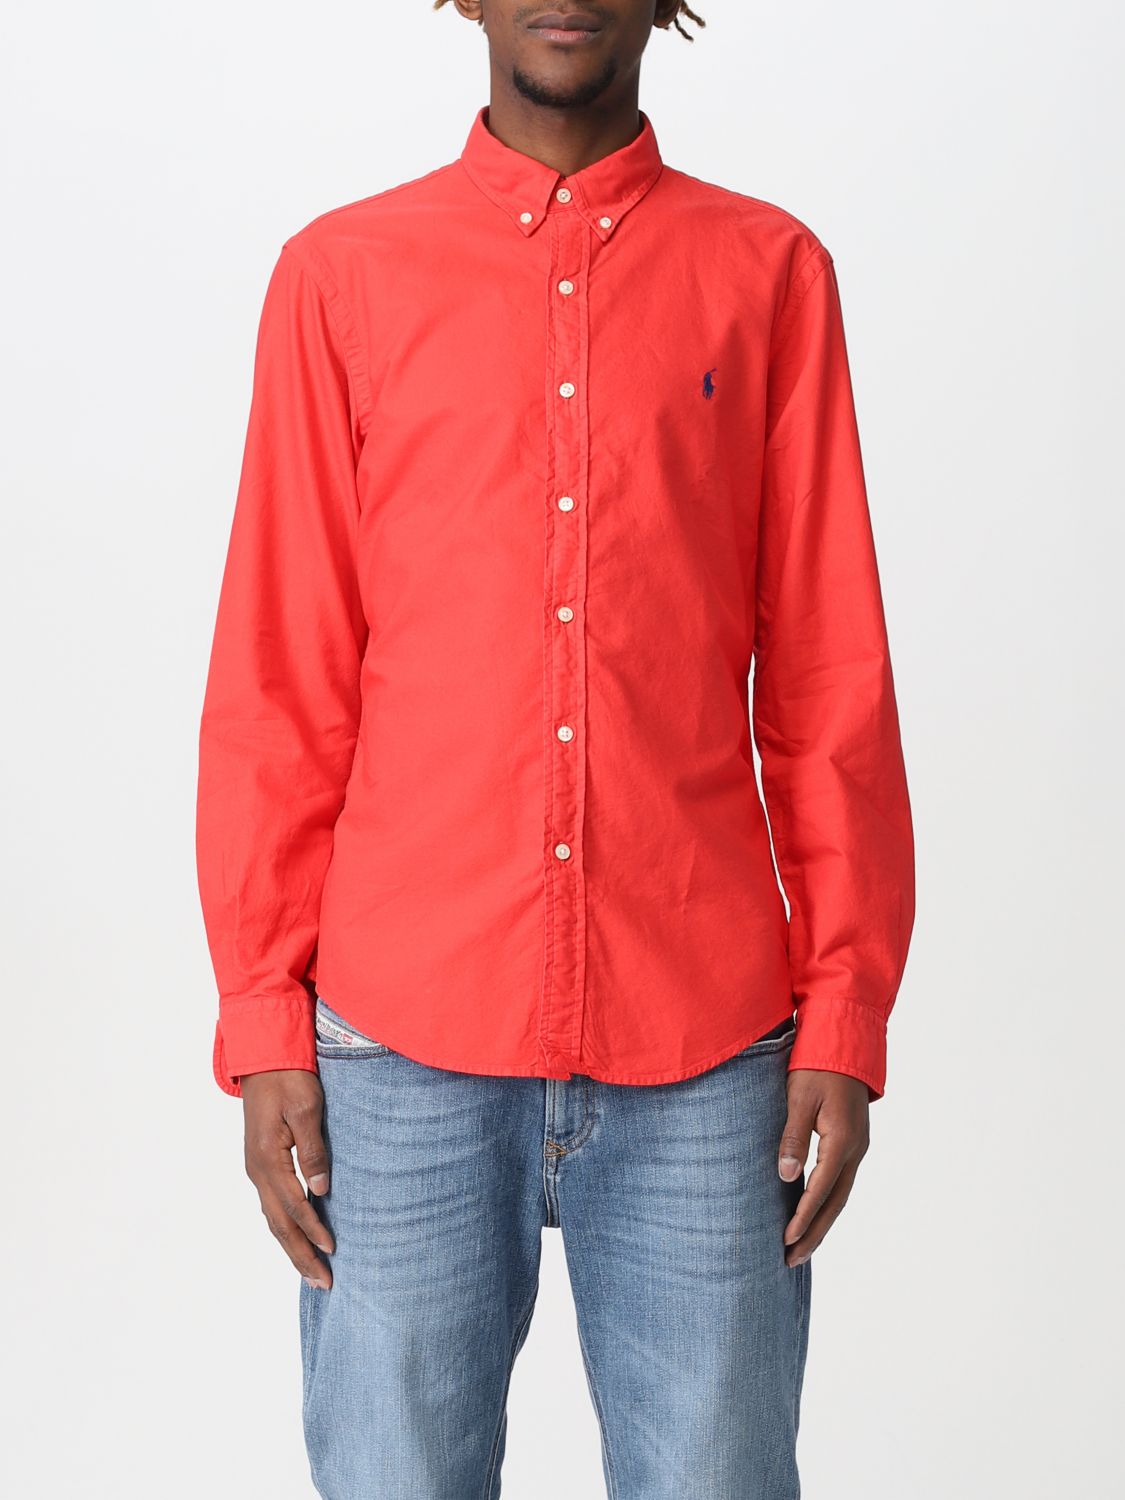 POLO RALPH LAUREN: shirt for man - Red | Polo Ralph Lauren shirt ...